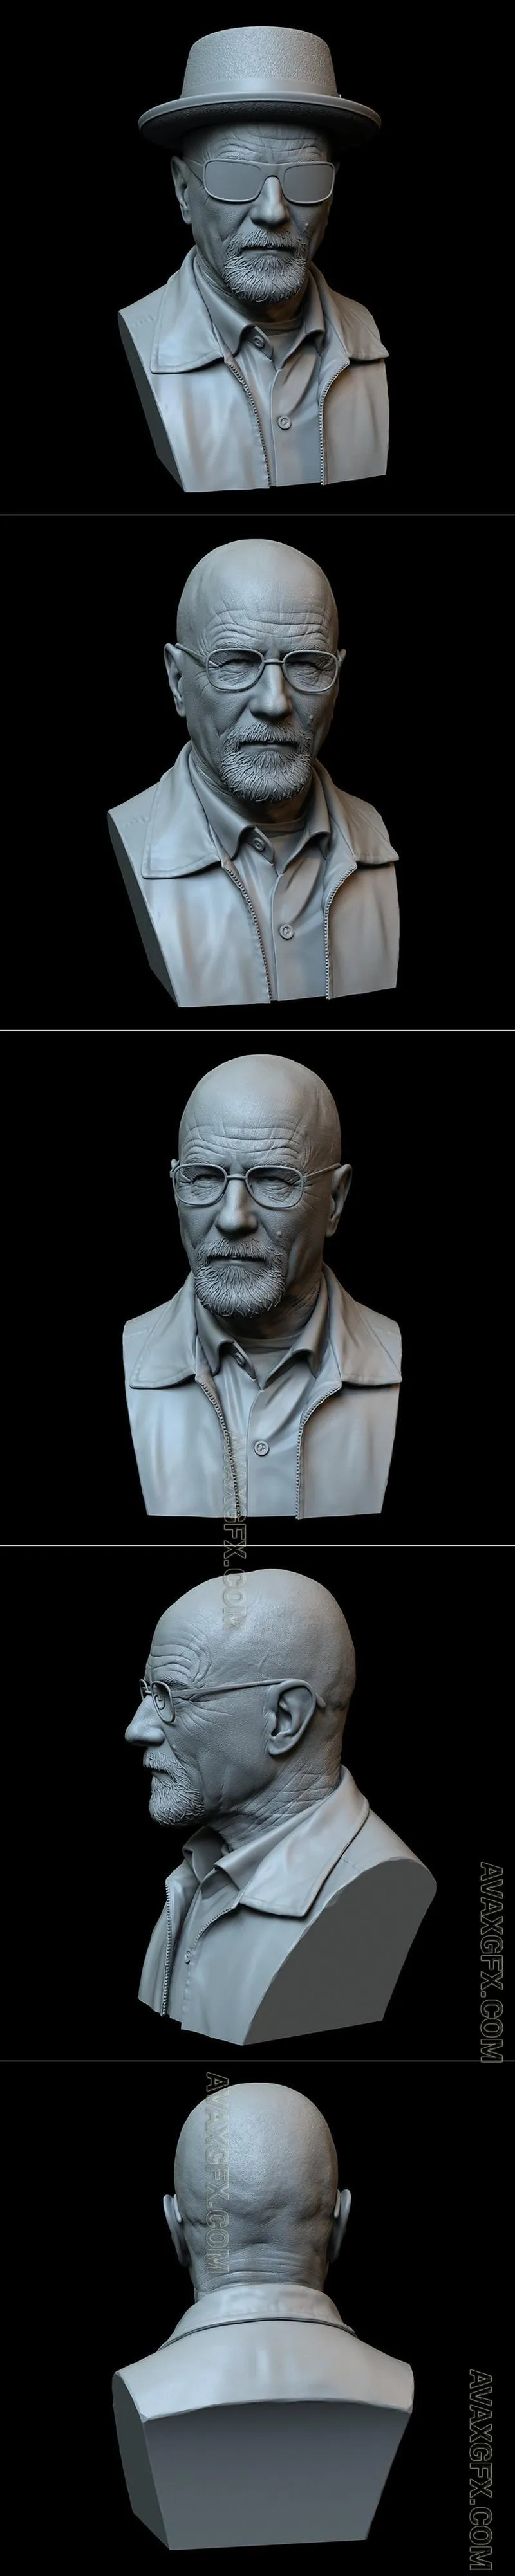 Walter White aka Heisenberg - STL 3D Model